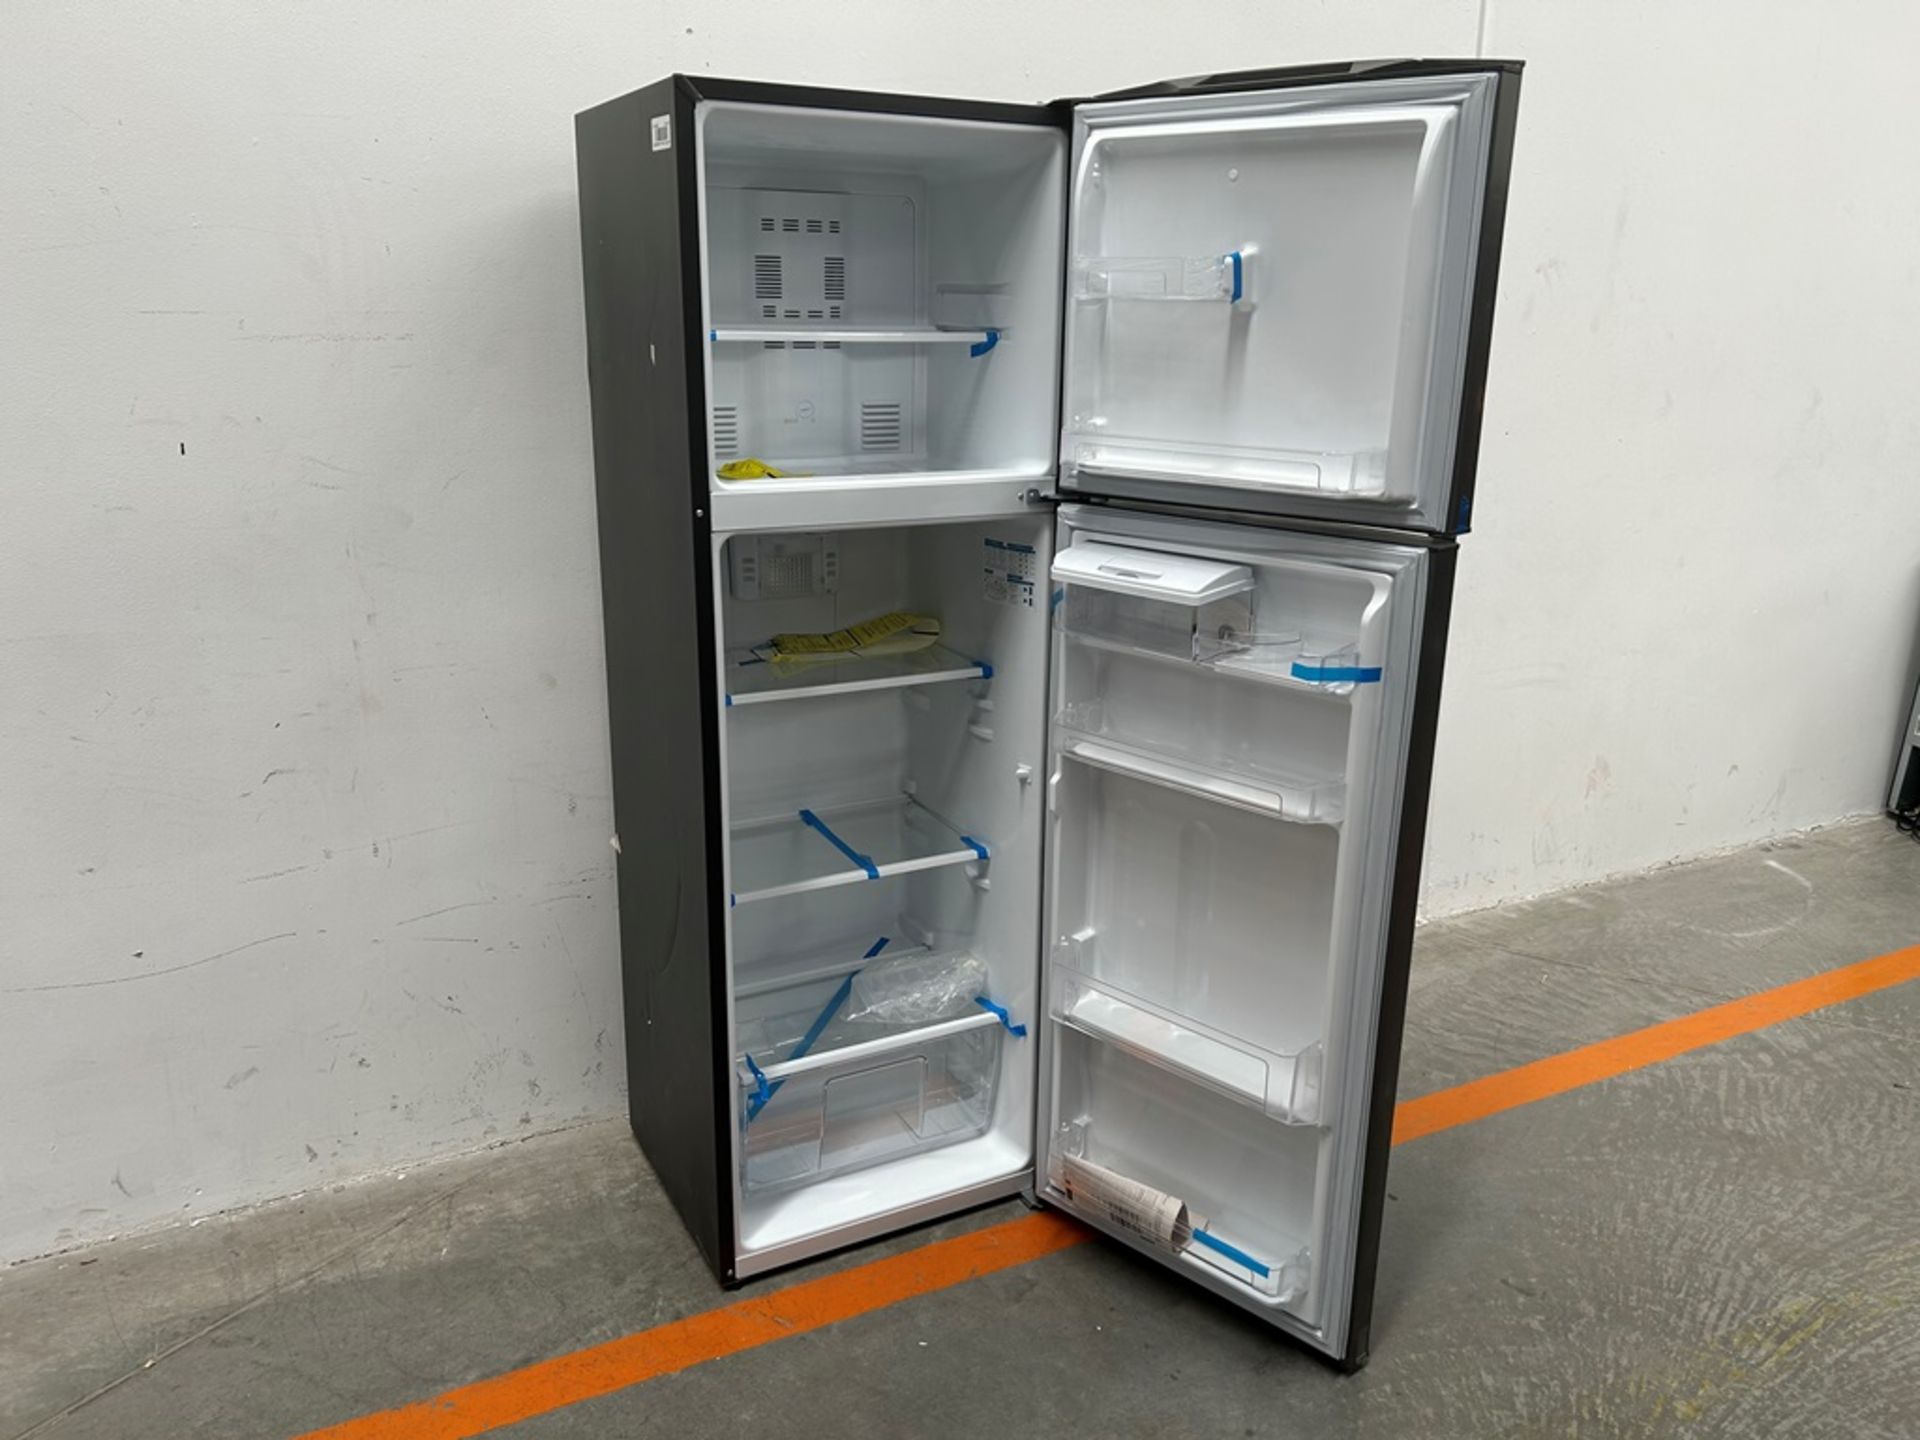 Lote de 2 refrigeradores contiene: 1 refrigerador con dispensador de agua Marca MABE, Modelo RMA300 - Image 9 of 18